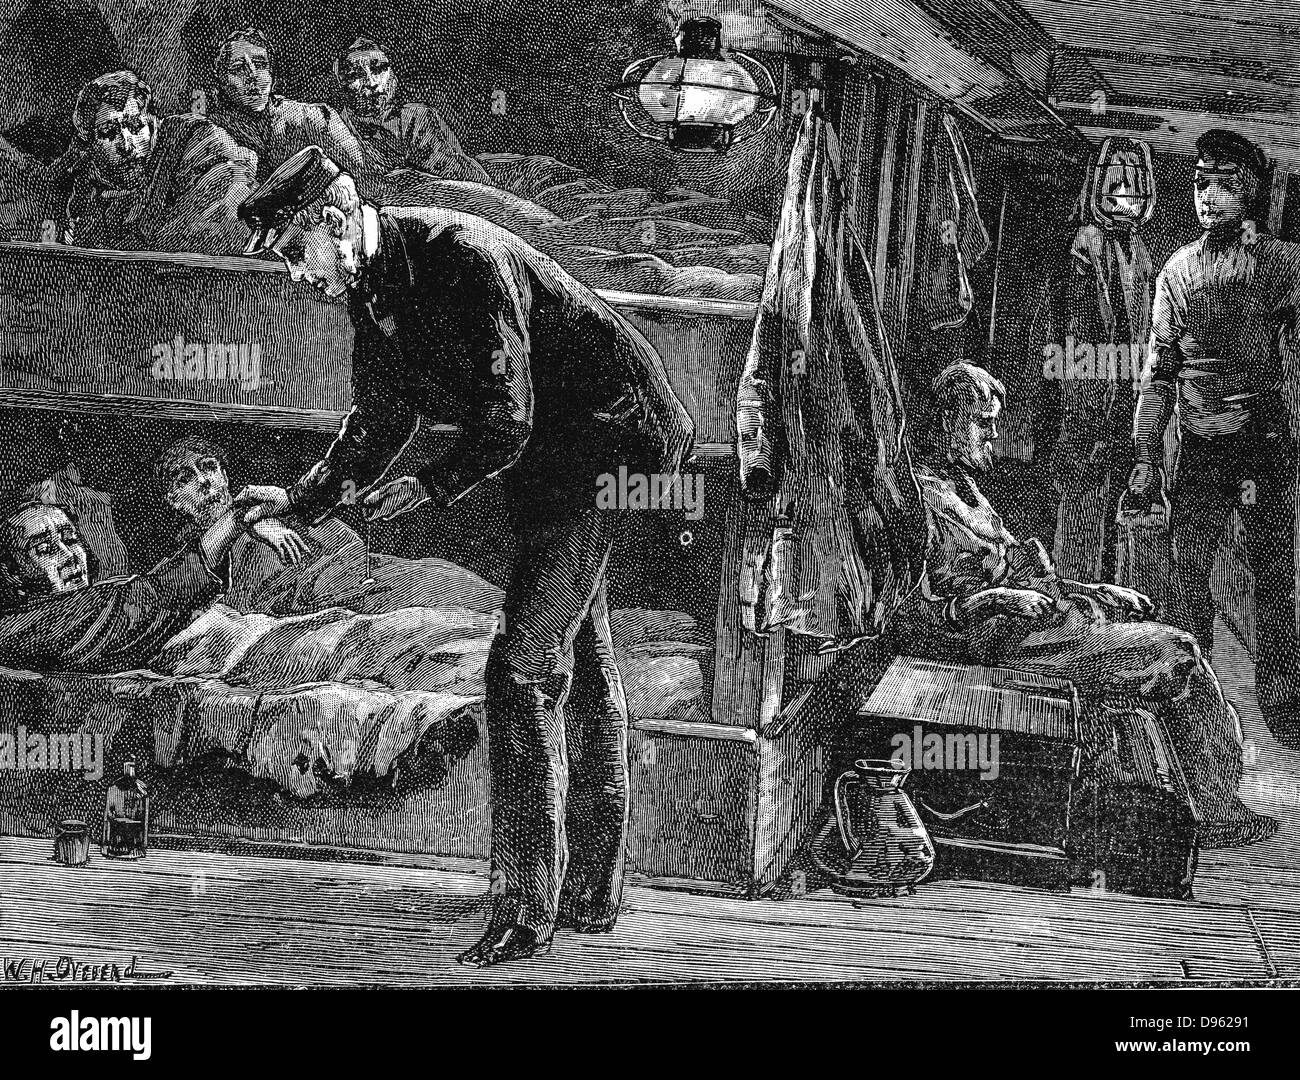 Prendre le pouls d'un émigrant irlandais malades à bord d'un navire à destination de l'Amérique du Nord au cours de la famine de la pomme de terre des années 1840. La gravure sur bois c1890. Banque D'Images